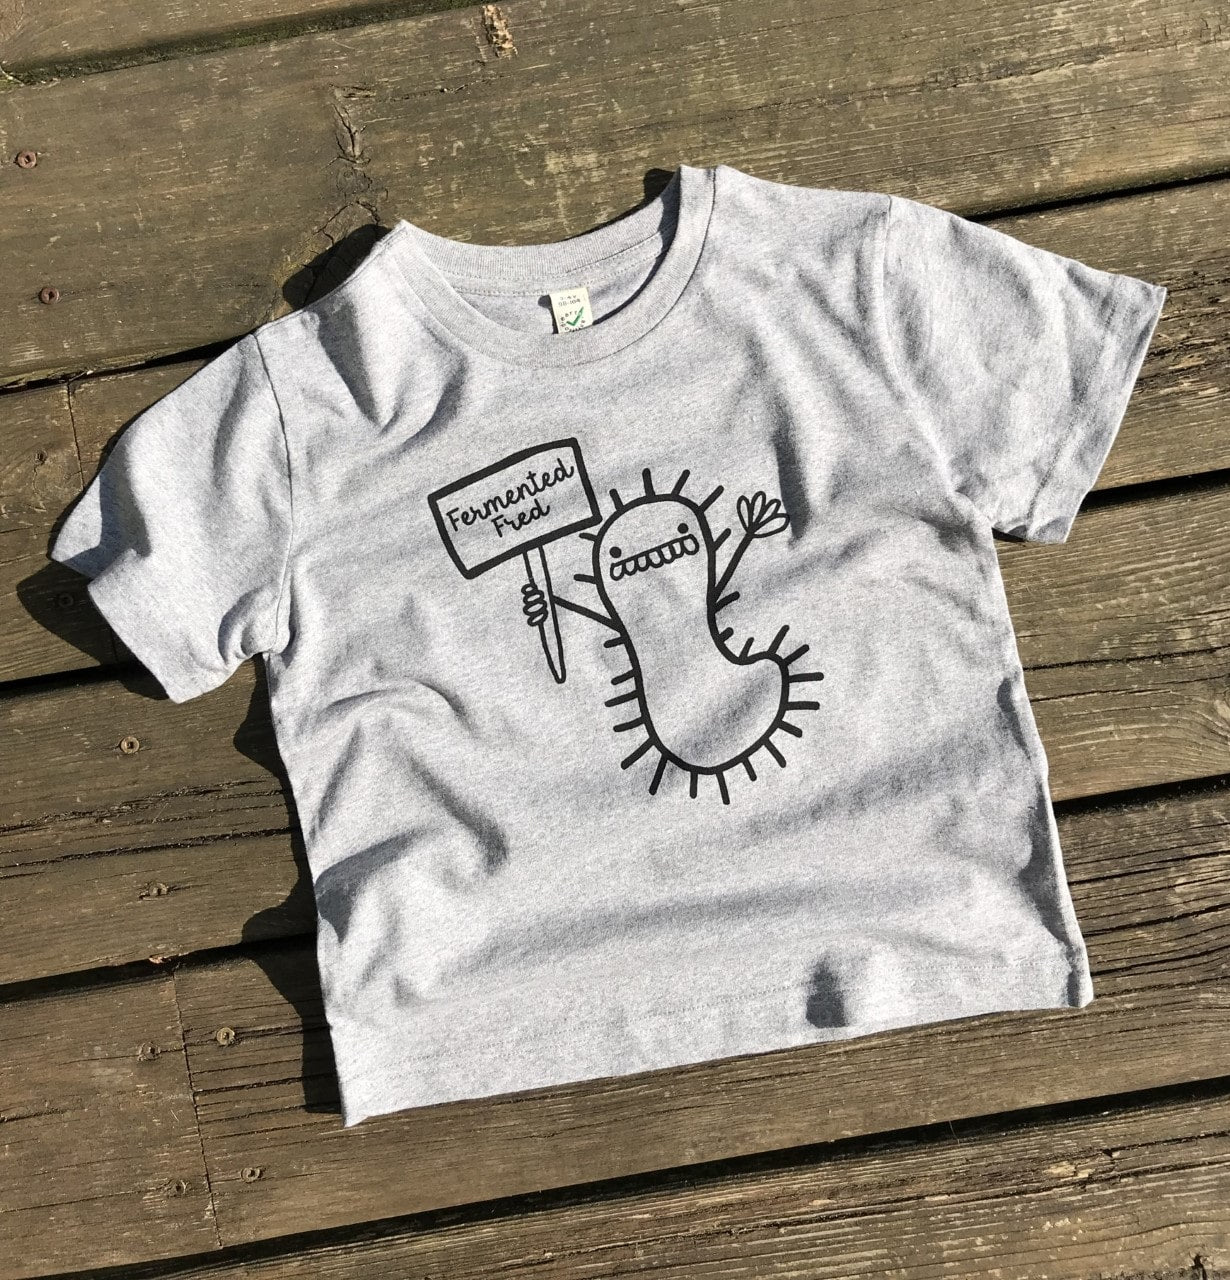 Unisex (Kids) Climate Neutral Cotton T-shirt - Various Sizes